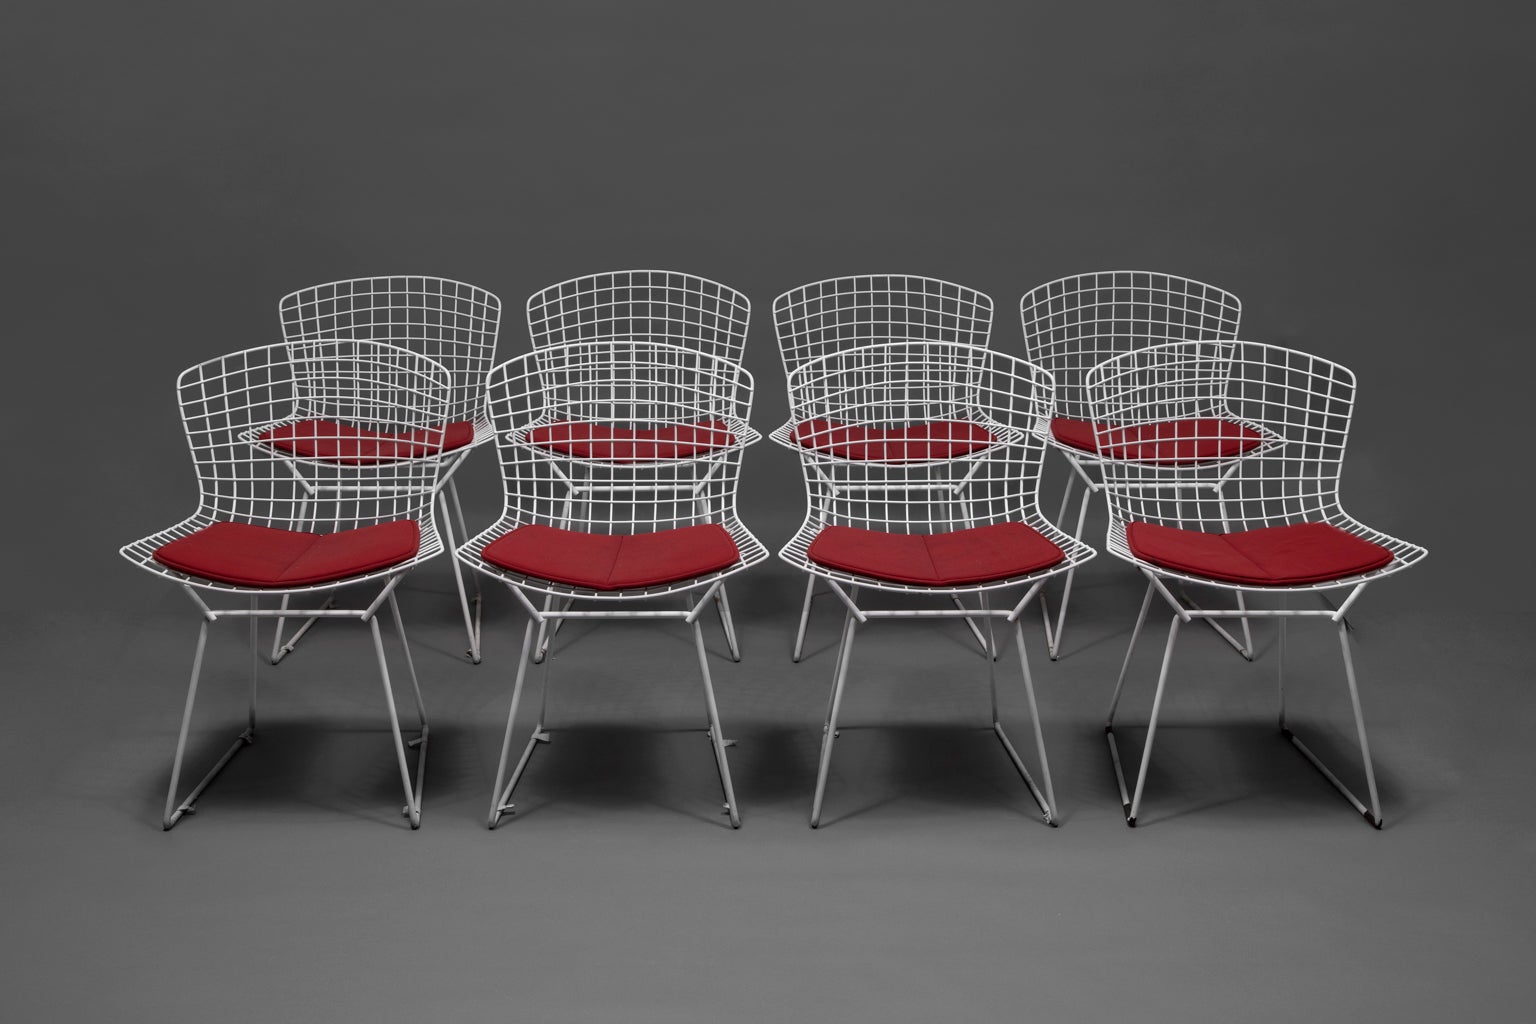 VENTE UNE SEMAINE SEULEMENT

Cet ensemble de huit chaises d'appoint et quatre coussins rouges sont aussi élégants, solides et fonctionnels qu'à l'époque de leur fabrication. Les couleurs sont vives et les coussins sont en très bon état. Les chaises